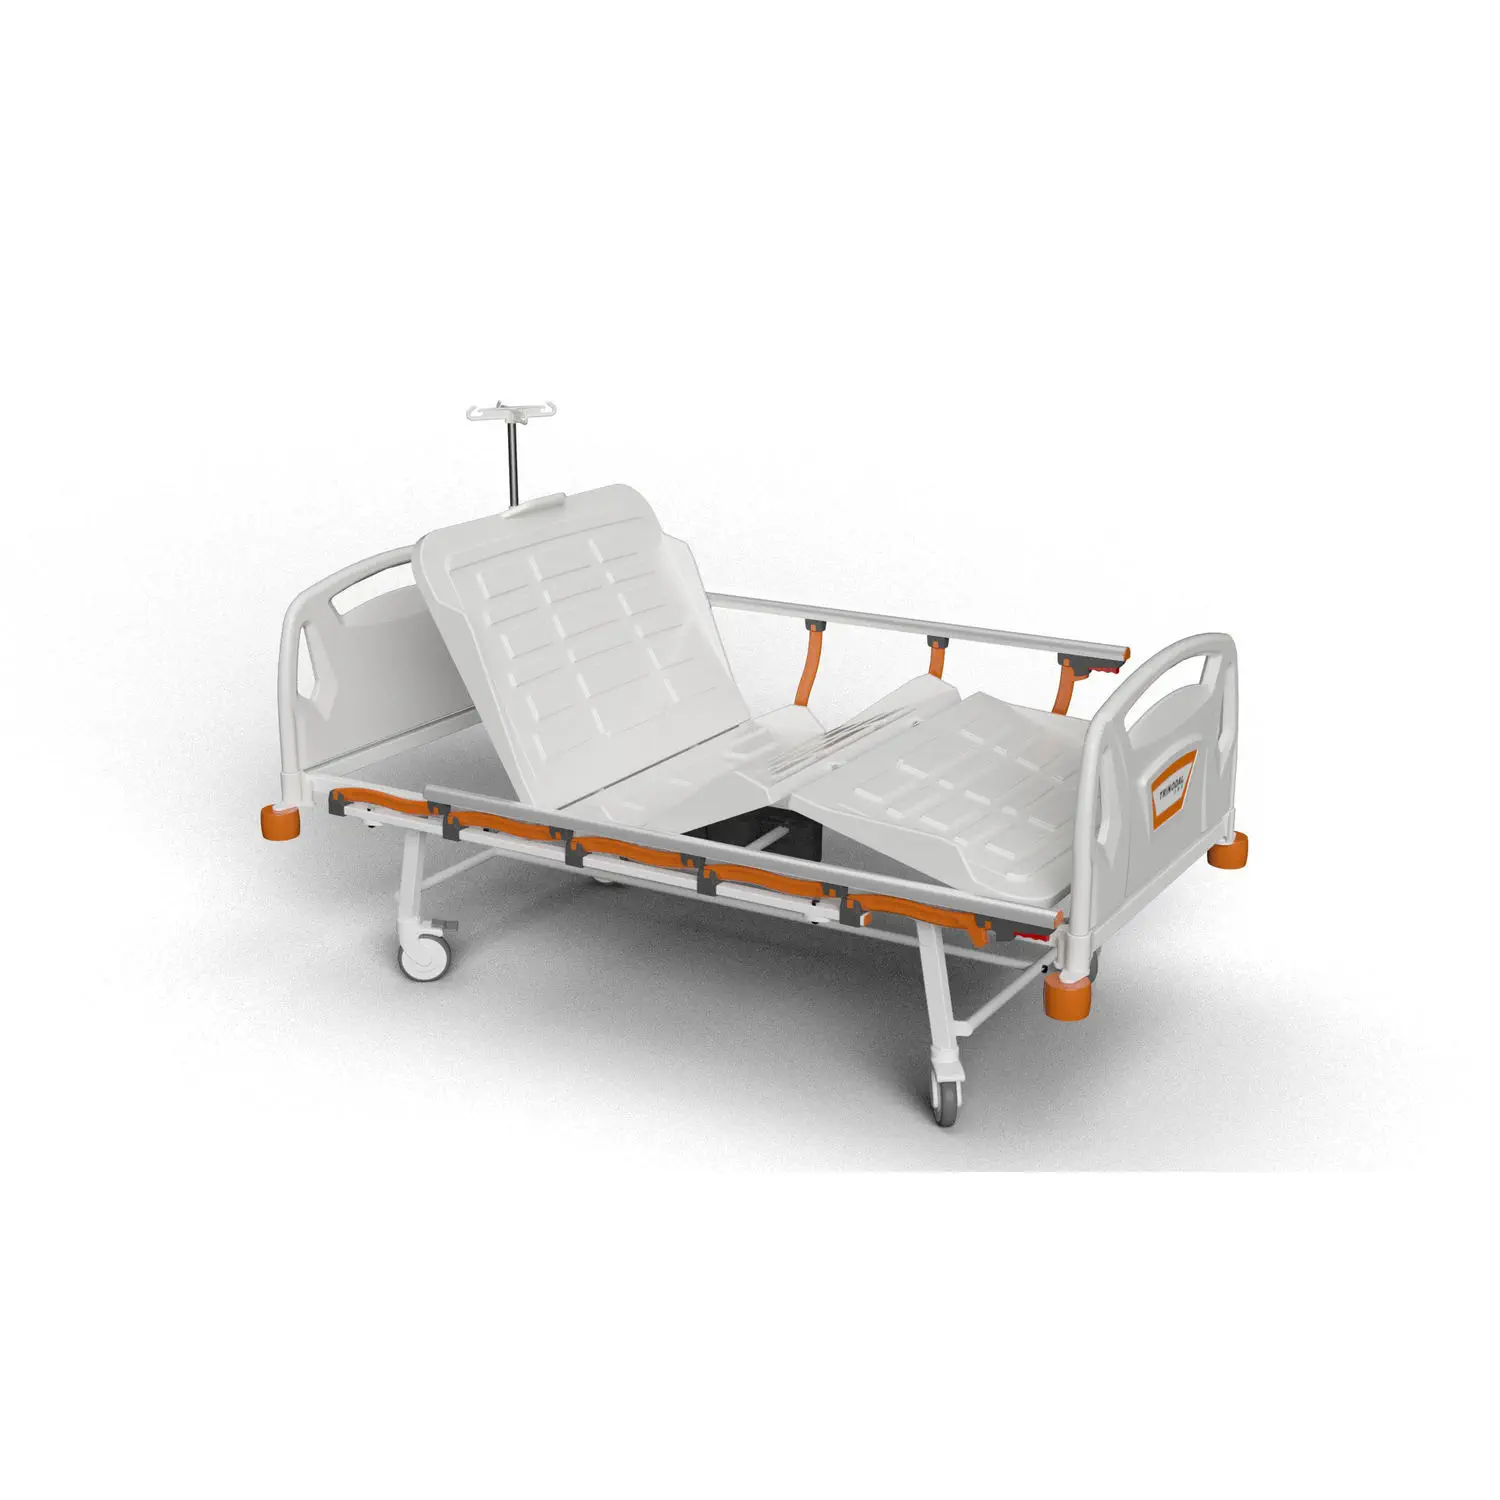 เตียงผู้ป่วยชนิดสามไกร์ปรับด้วยไฟฟ้าราวสไลด์  Hospital bed DE 1010  Trinodal